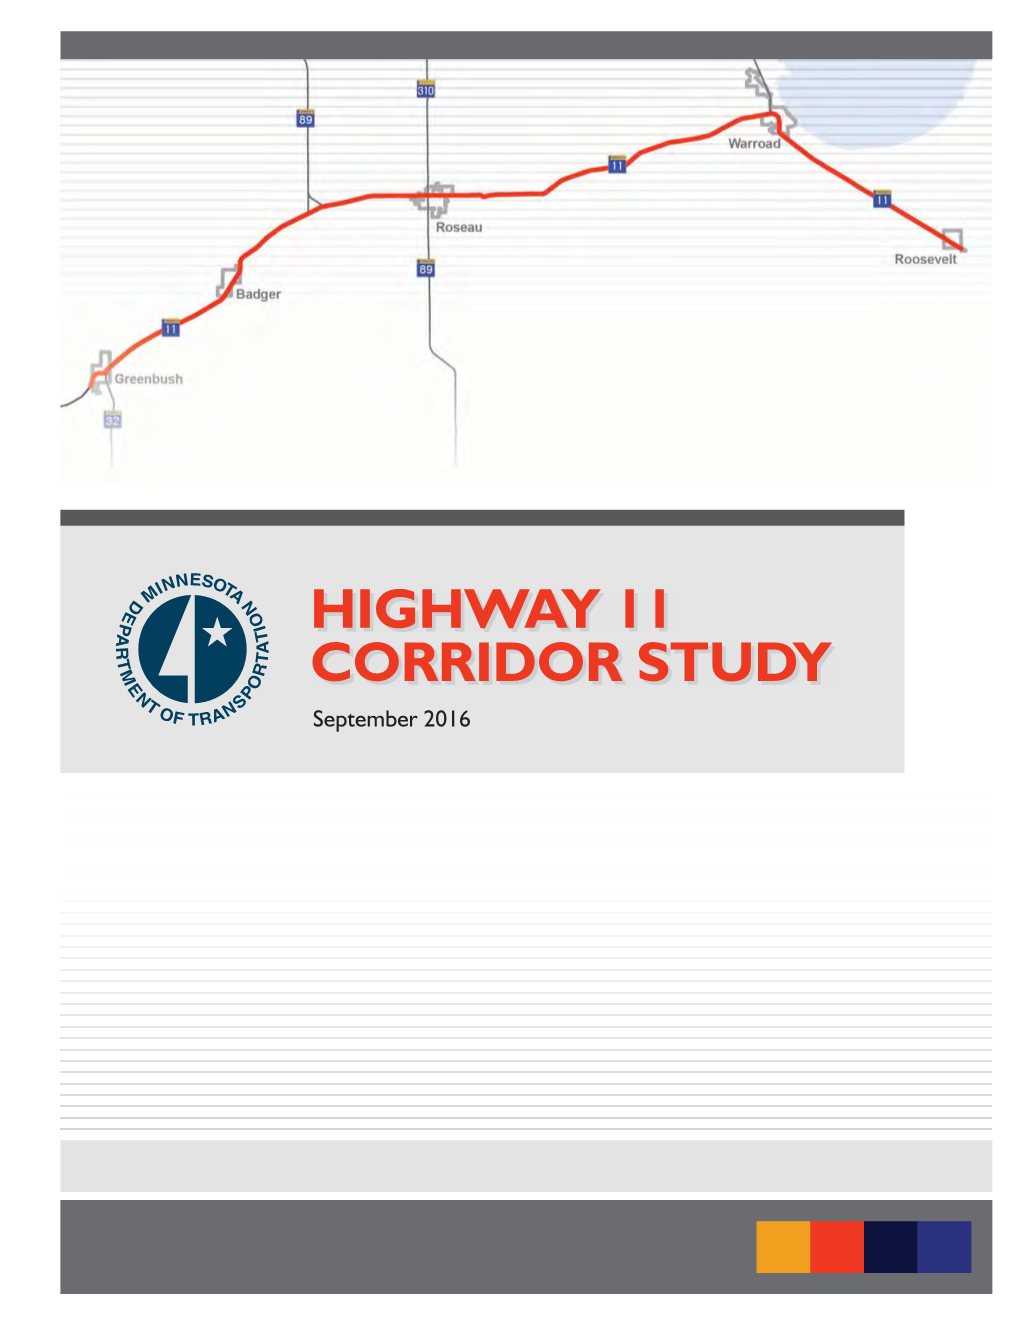 Highway 11 Corridor Study